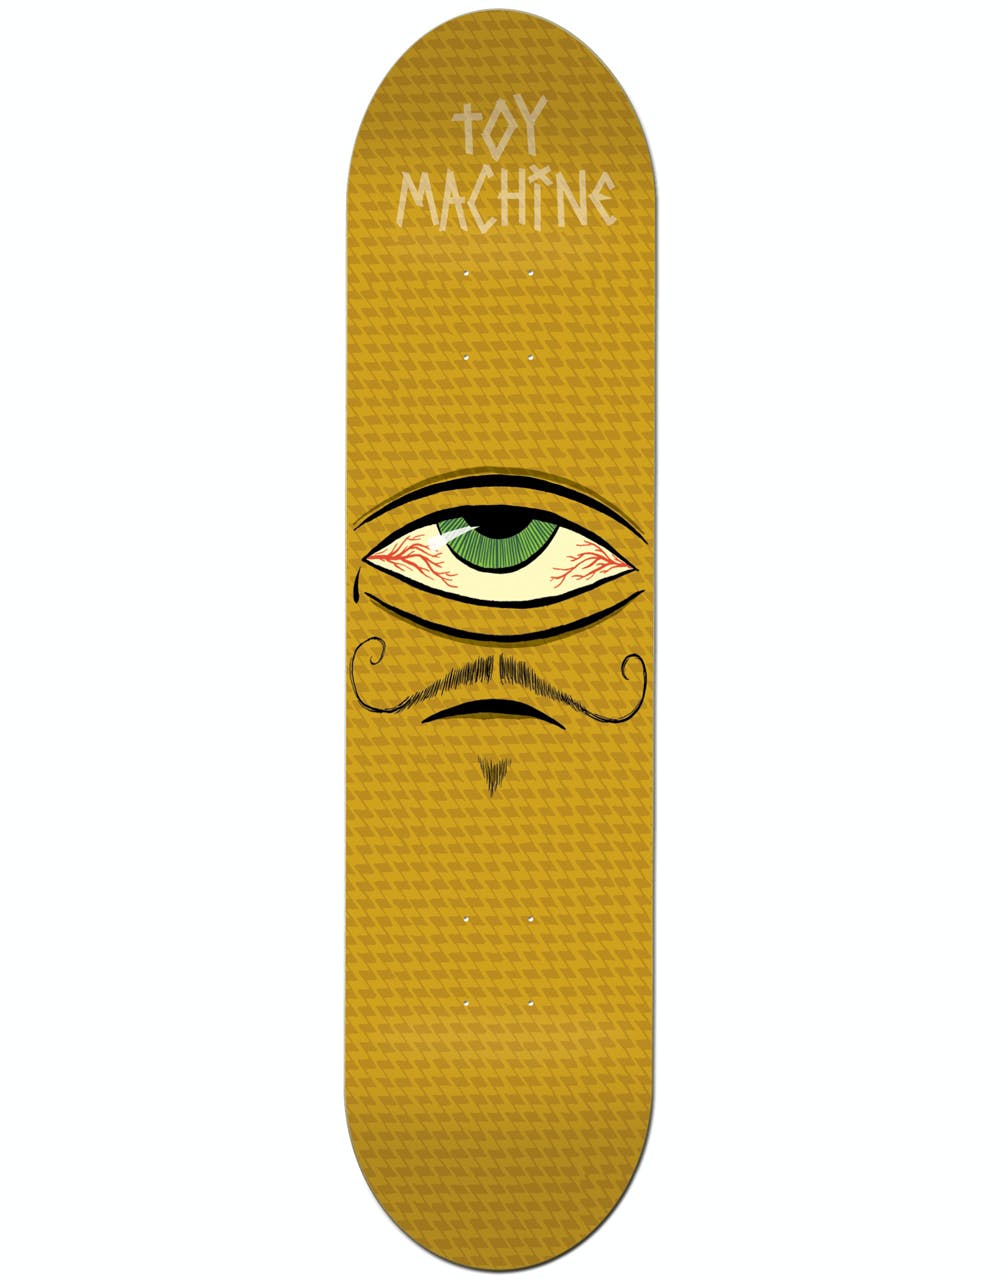 Toy Machine Mustachio Skateboard Deck - 7.75"